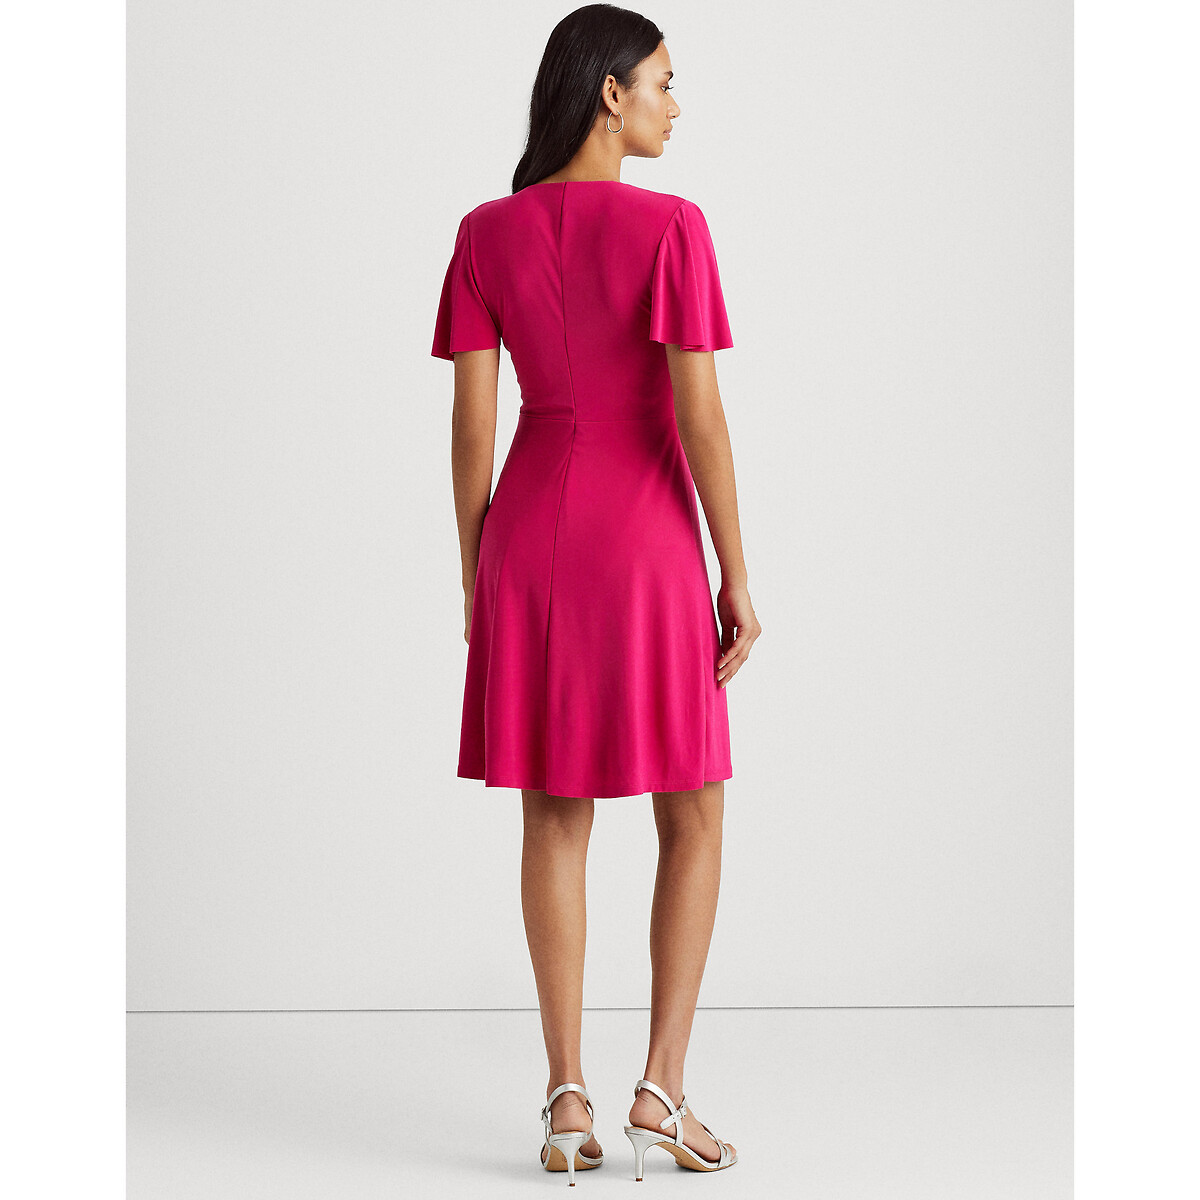 Платье LaRedoute С запахом и короткими рукавами 40 (FR) - 46 (RUS) розовый, размер 40 (FR) - 46 (RUS) С запахом и короткими рукавами 40 (FR) - 46 (RUS) розовый - фото 3